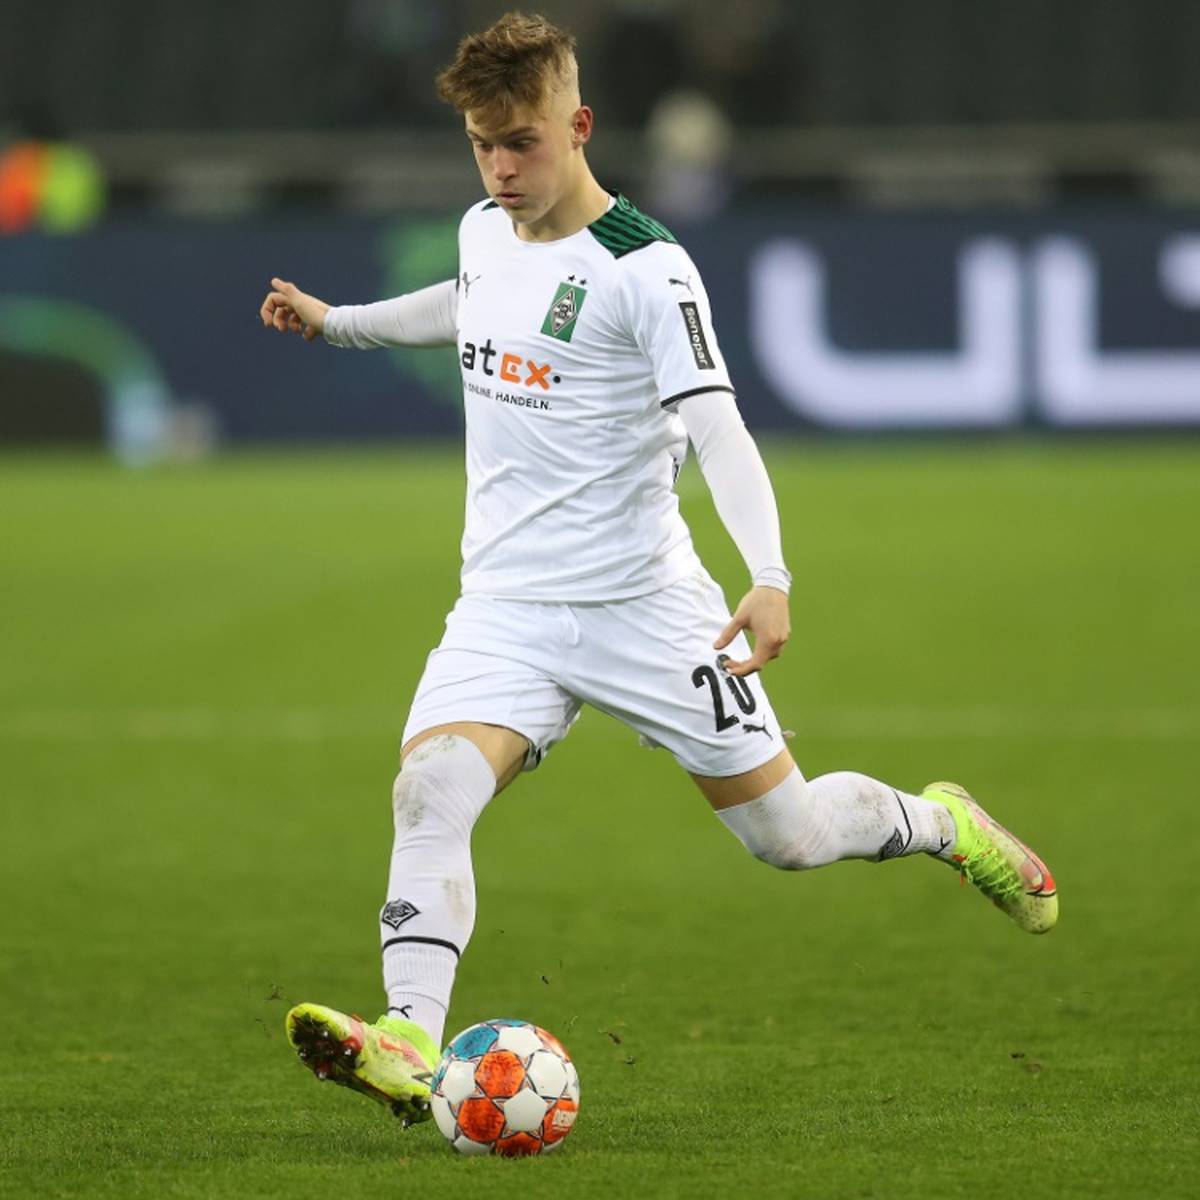 Abwehrspieler Luca Netz (19) ist im Trainingslager vom Fußball-Bundesligisten Borussia Mönchengladbach positiv auf das Coronavirus getestet worden.